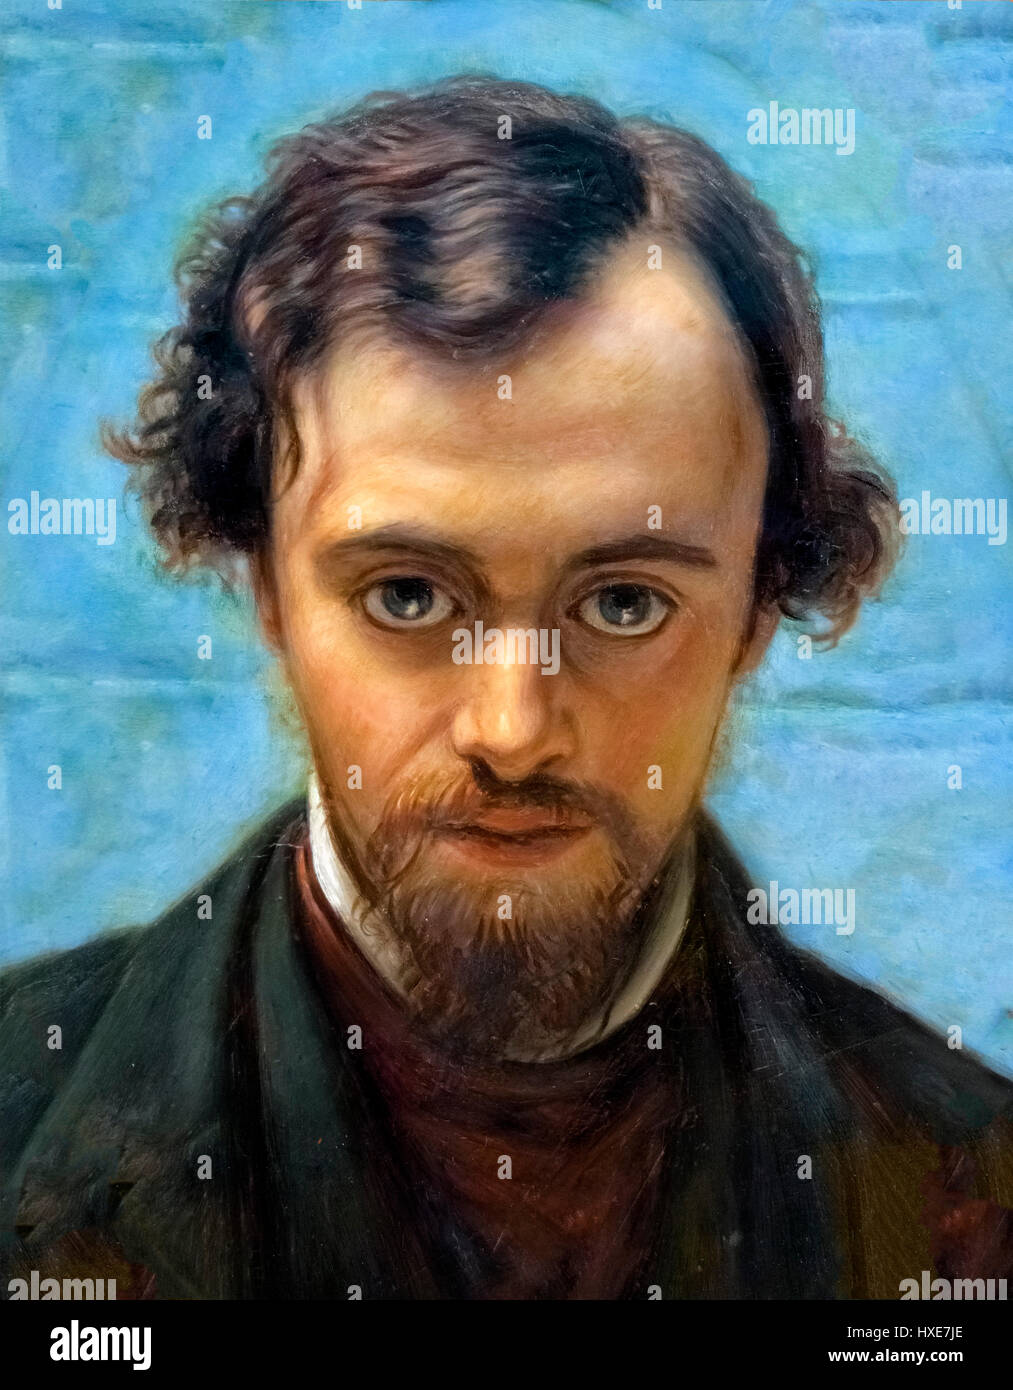 Dante Gabriel Rossetti (1828-1882), portrait par William Holman Hunt, huile sur panneau, c.1882. Rossetti, avec Holman Hunt, a été membre fondateur de la confrérie préraphaélite du 19e siècle. Banque D'Images